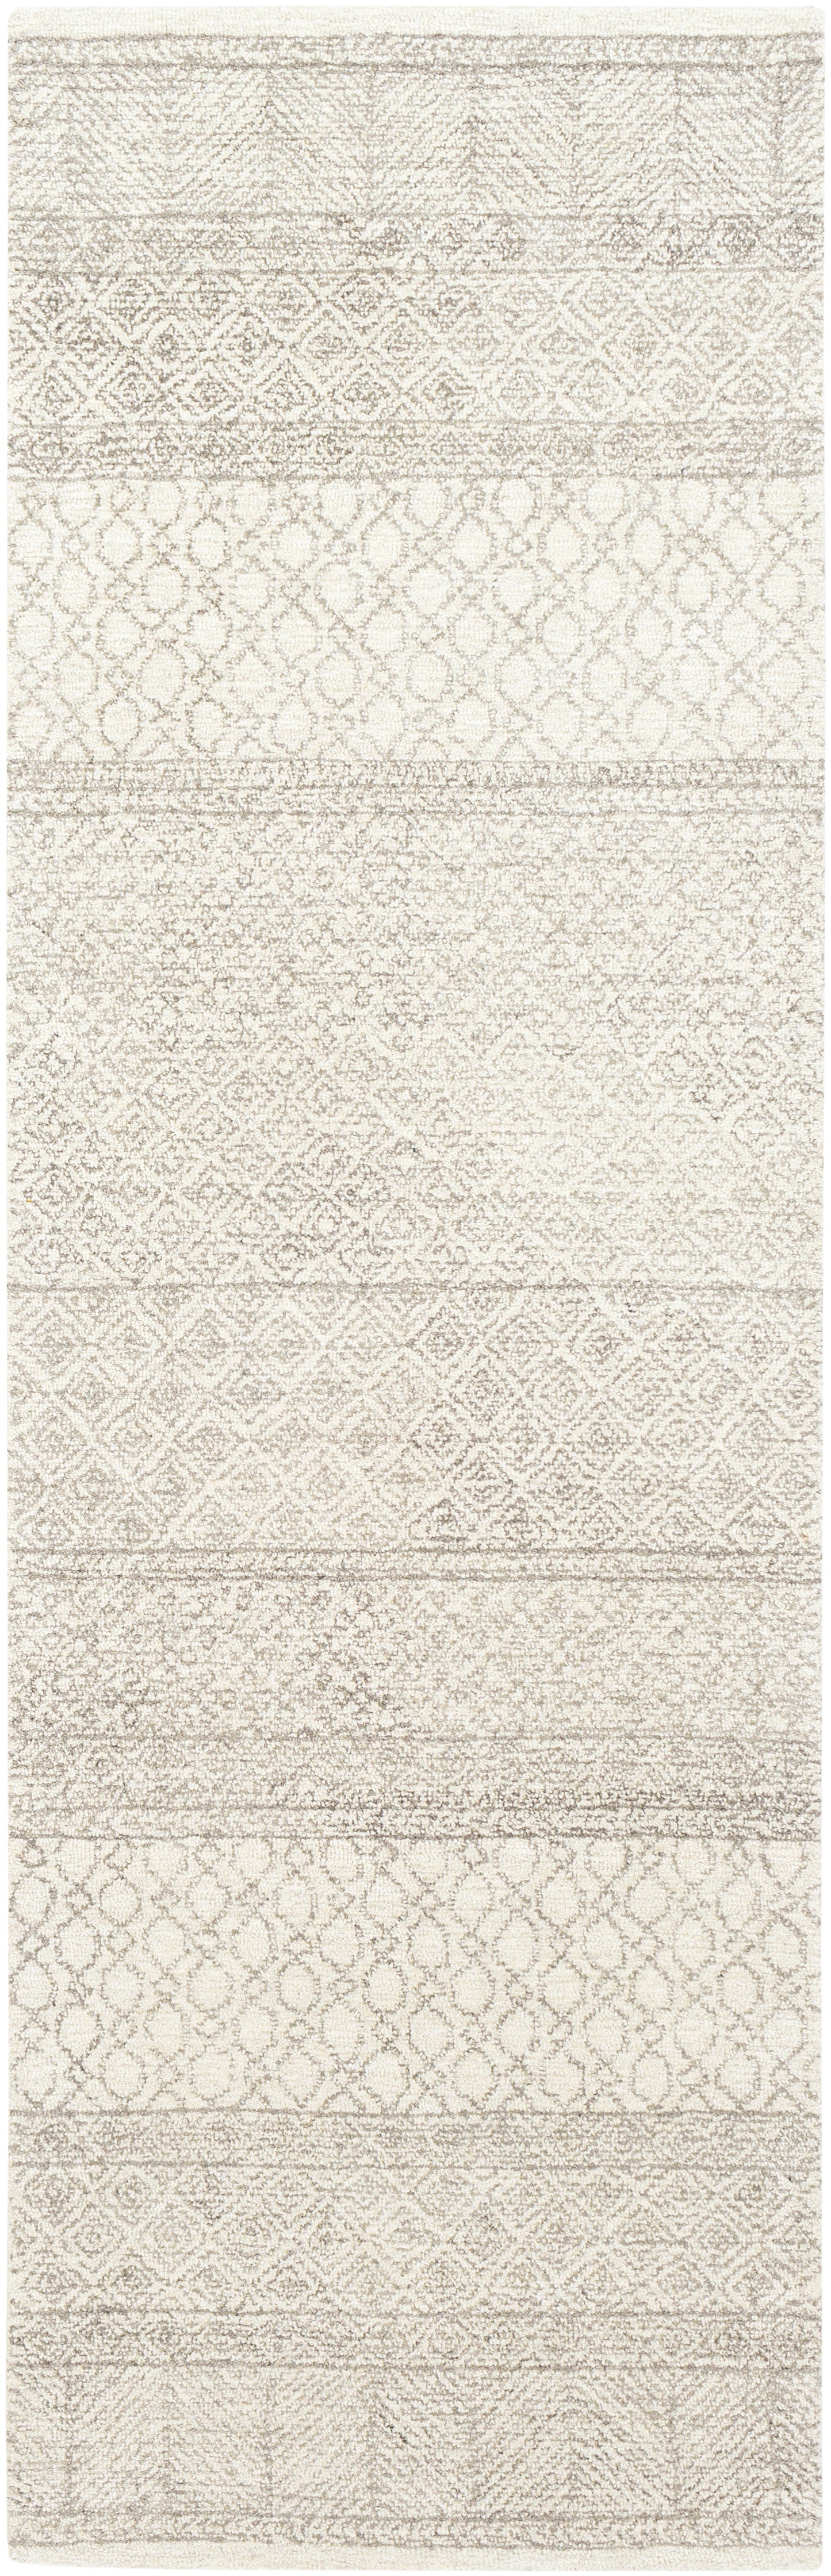 Maroc 23455 Hand Tufted Wool Indoor Area Rug by Surya Rugs